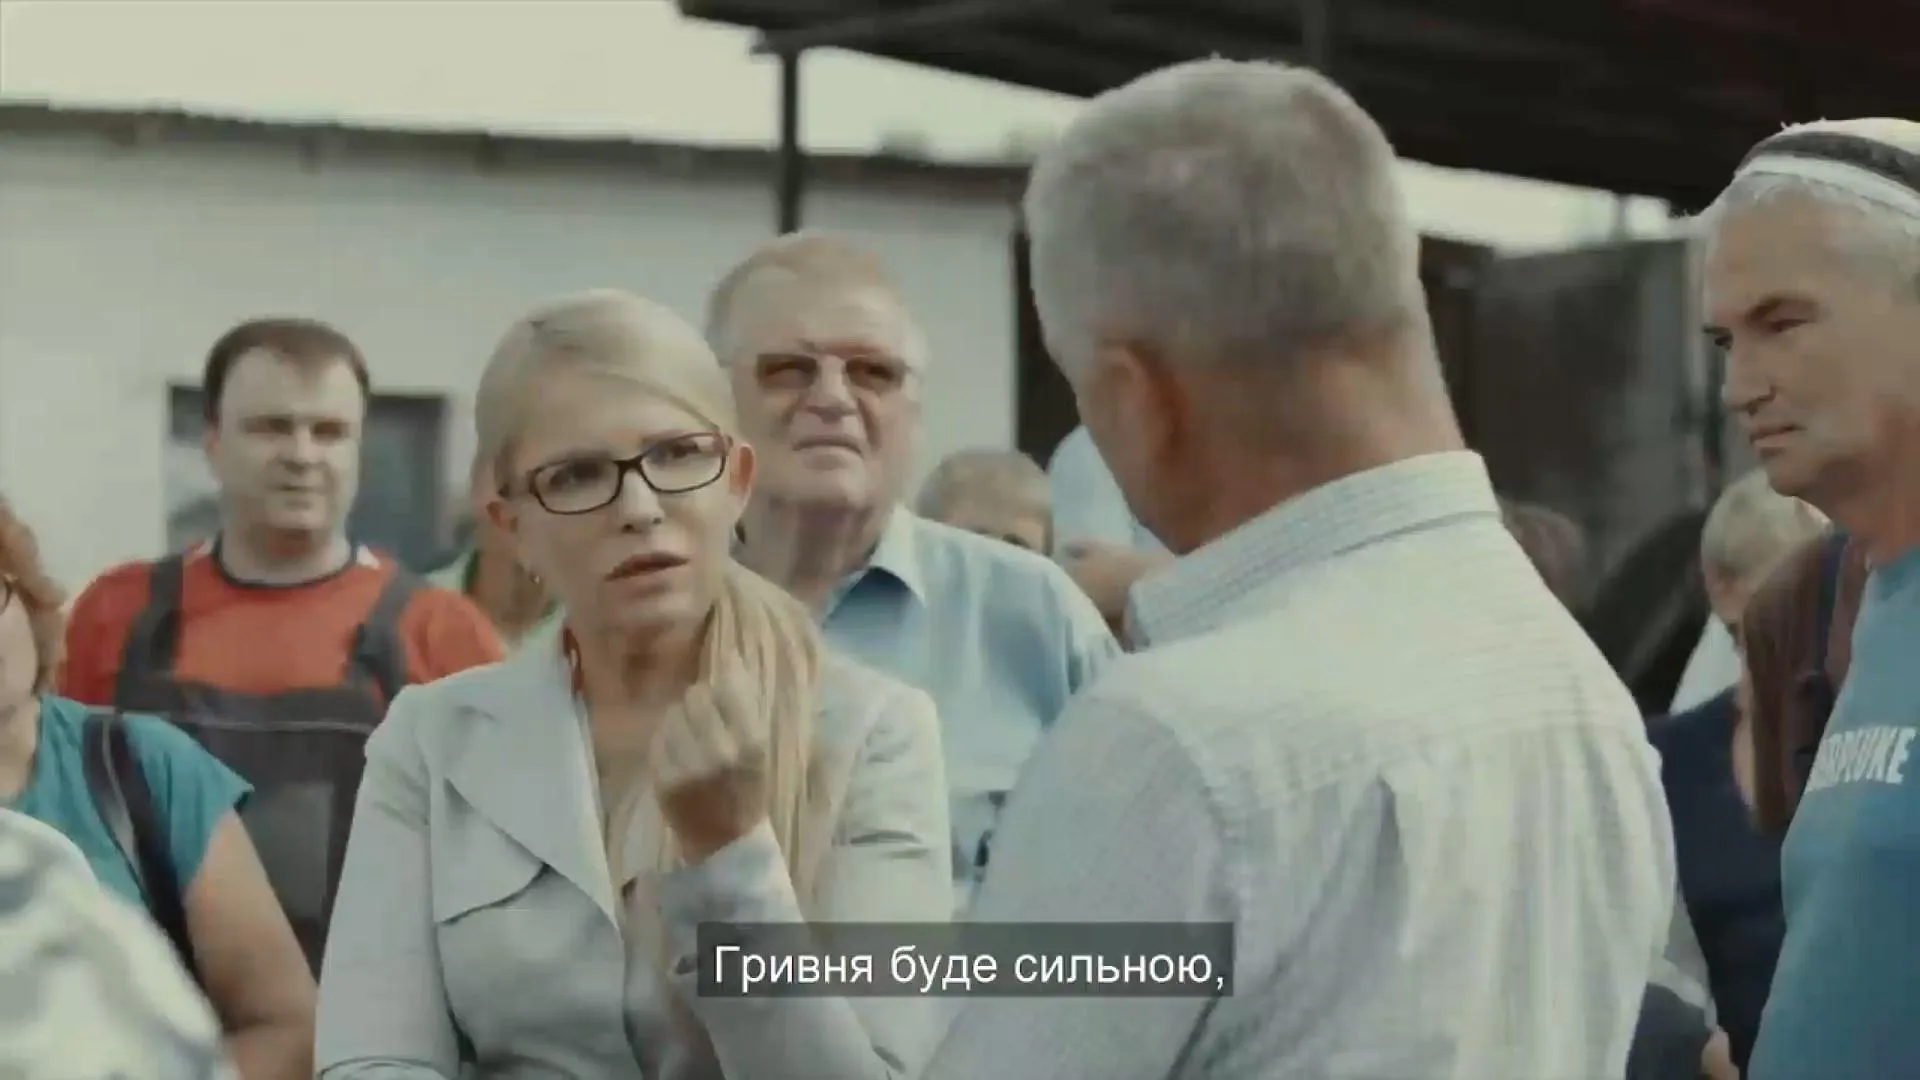 Тимошенко ютуб вибори реклама